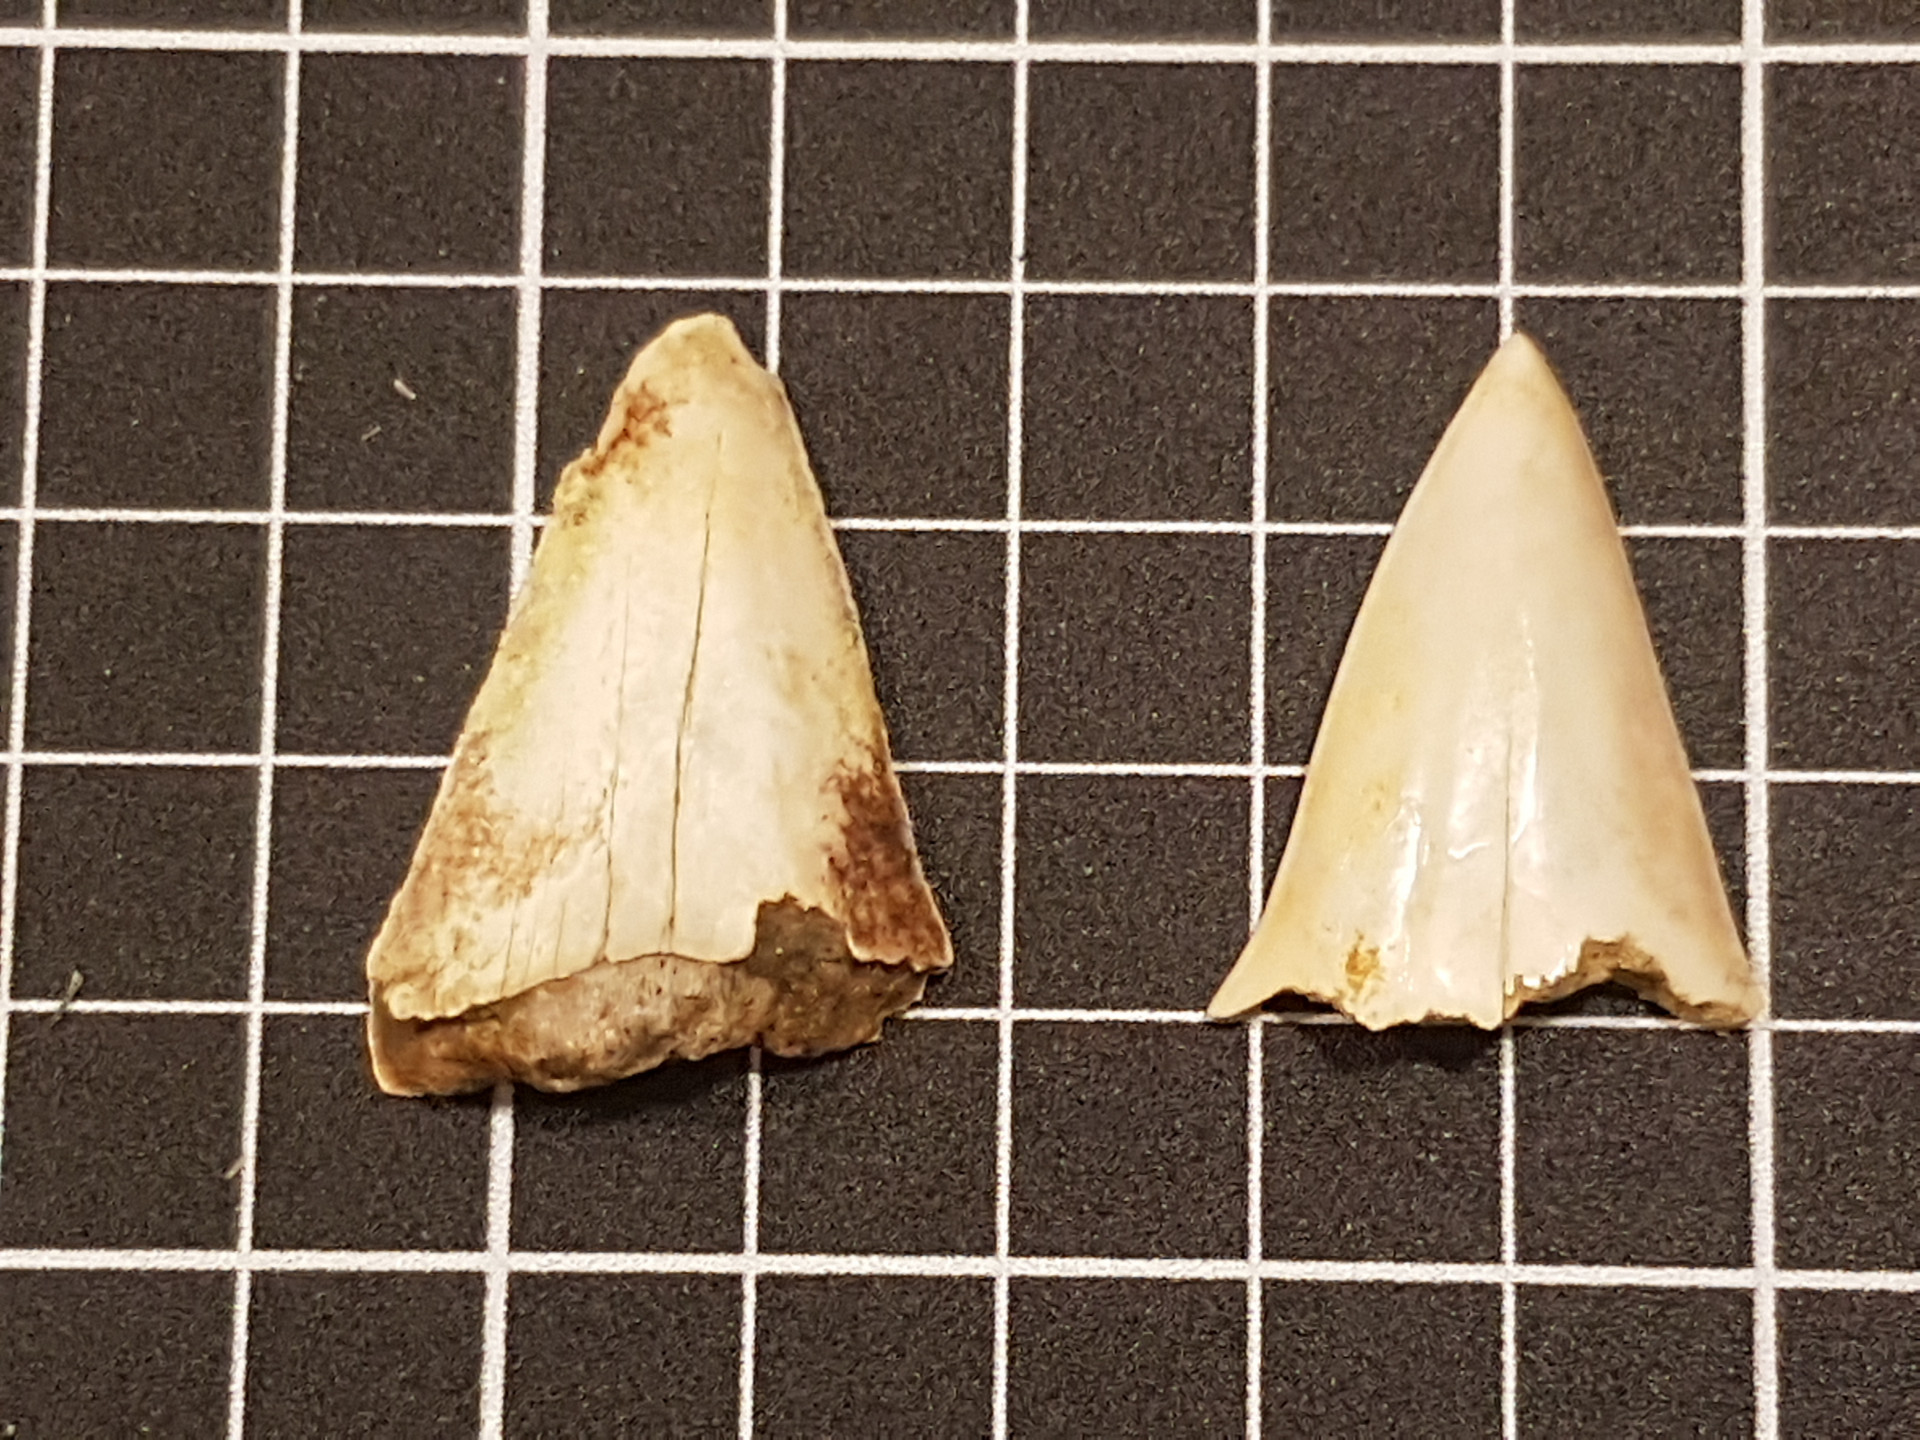 Mako (Isurus) shark tooth